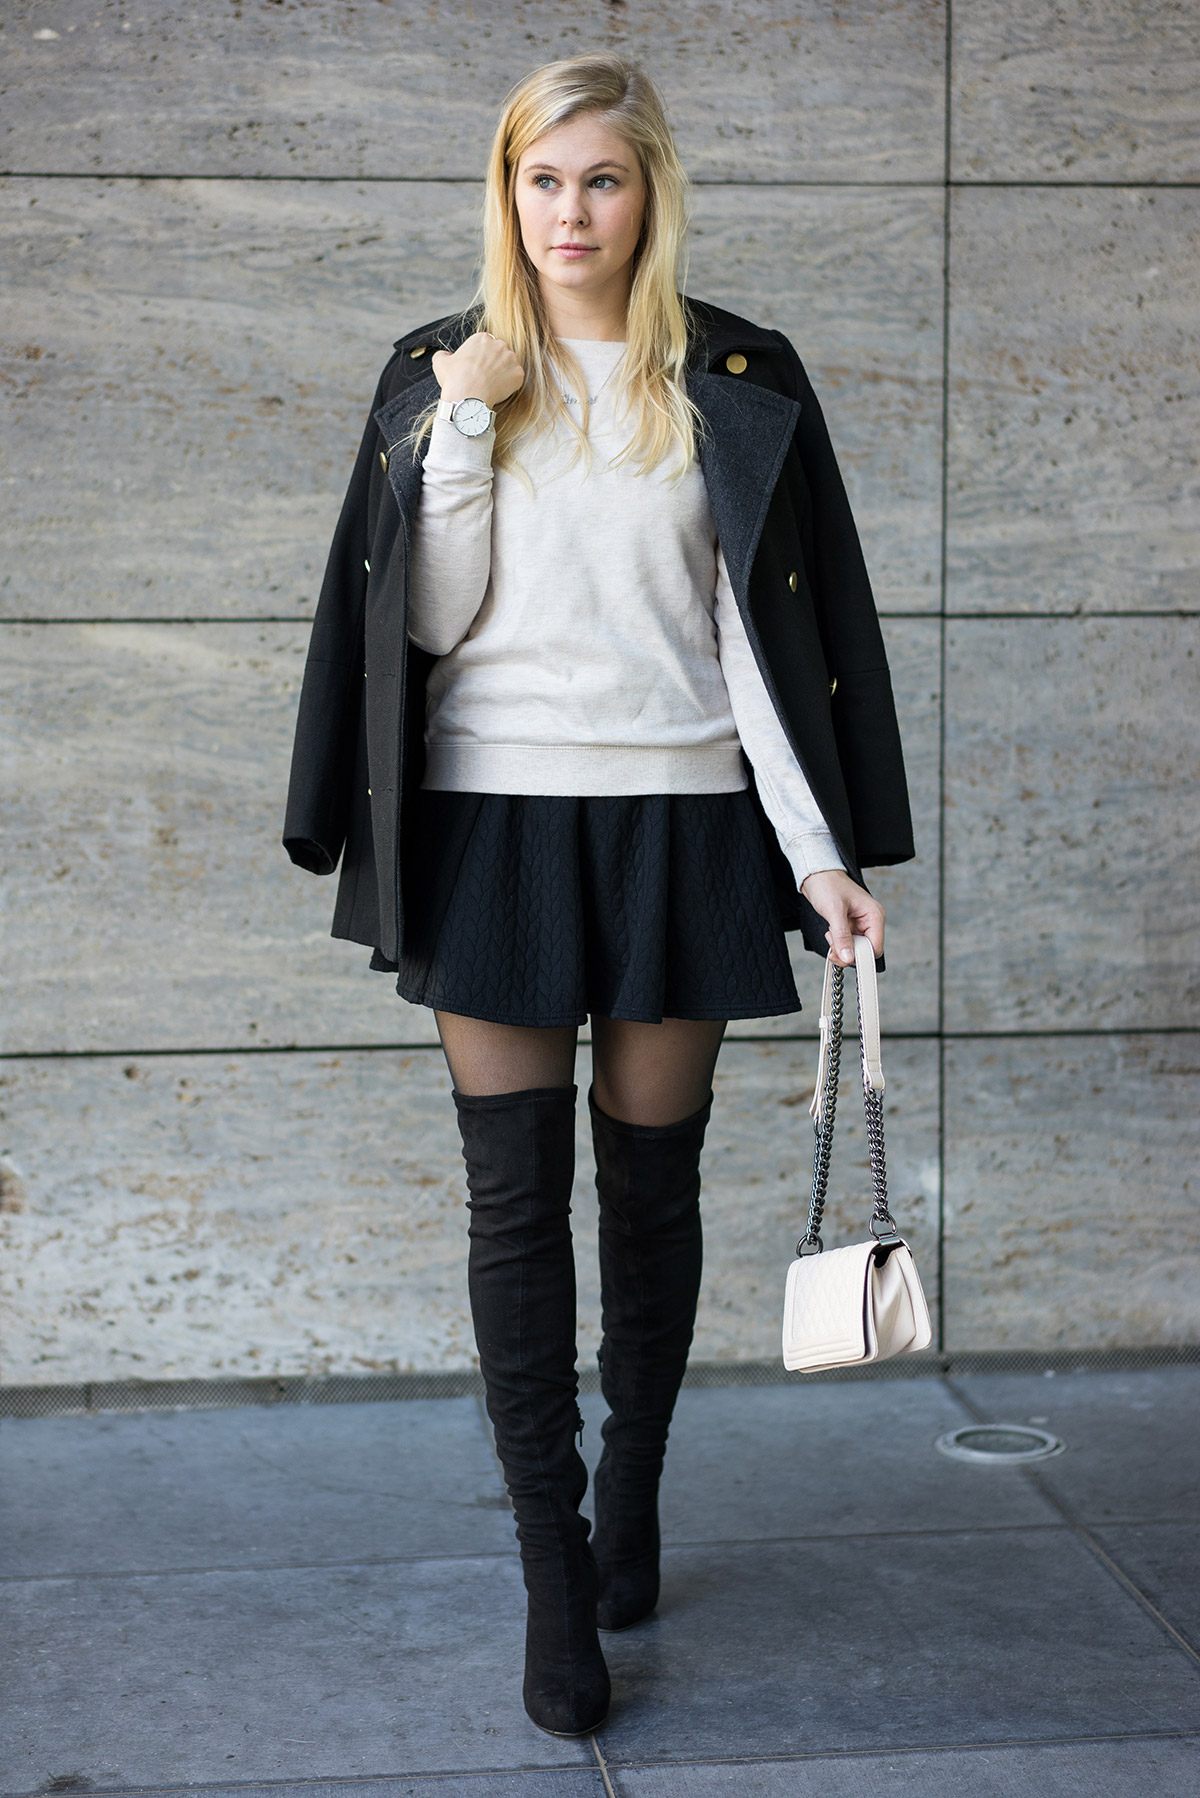 blondegirl with black overknees